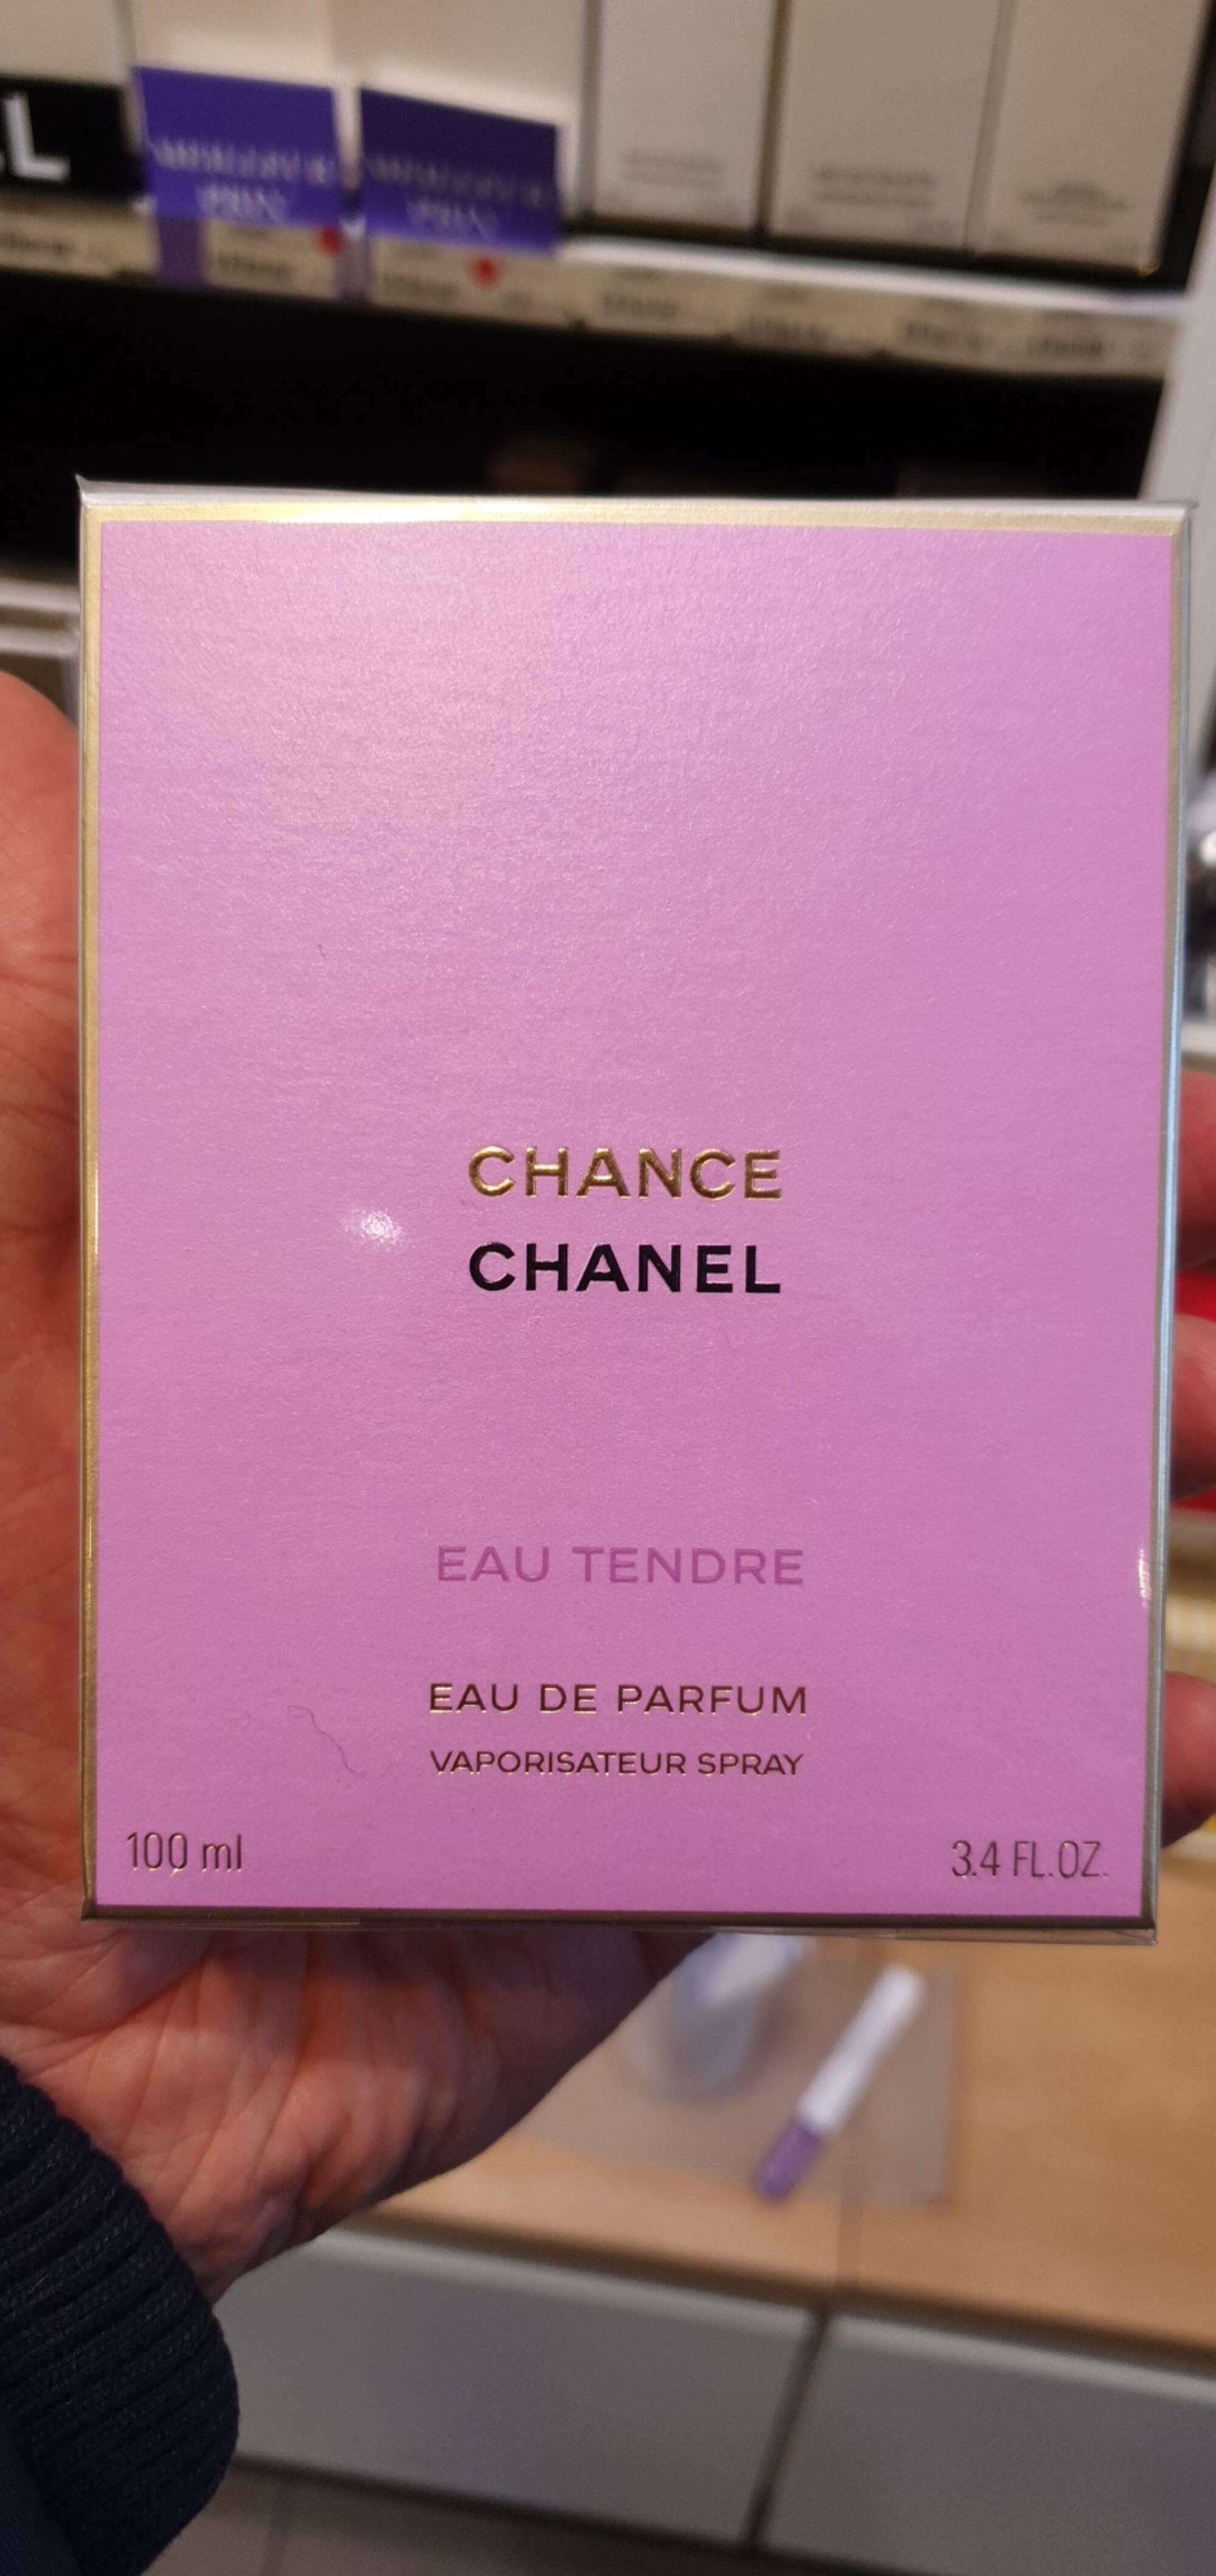 CHANEL - Chance eau tendre - Eau de parfum